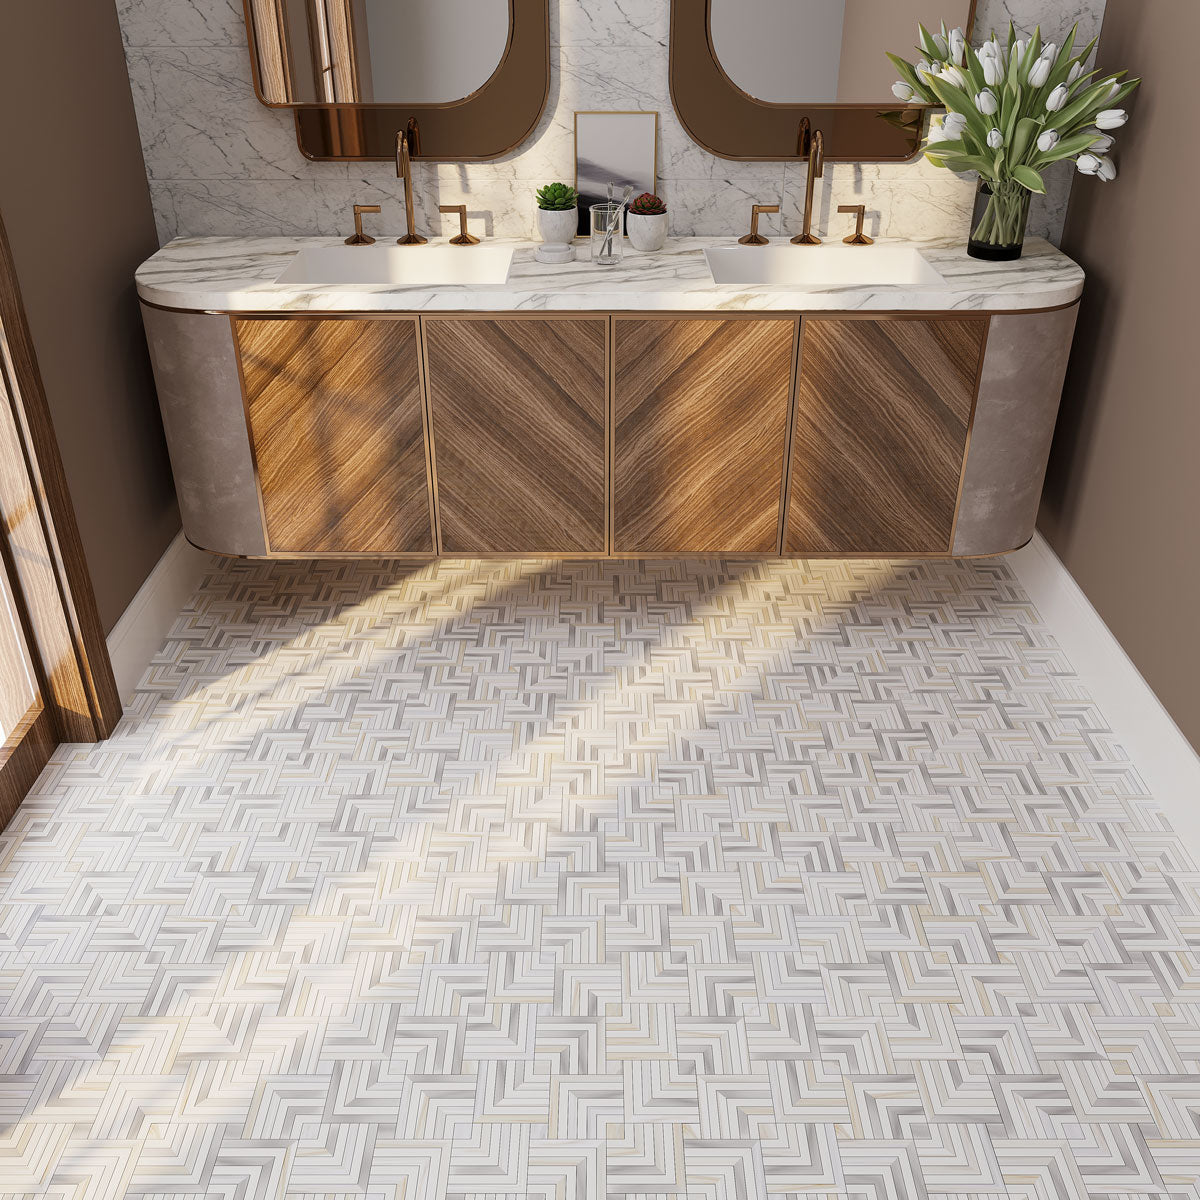 Square Weave Calacatta Gold & Thassos Mosaic Tile bathroom floor